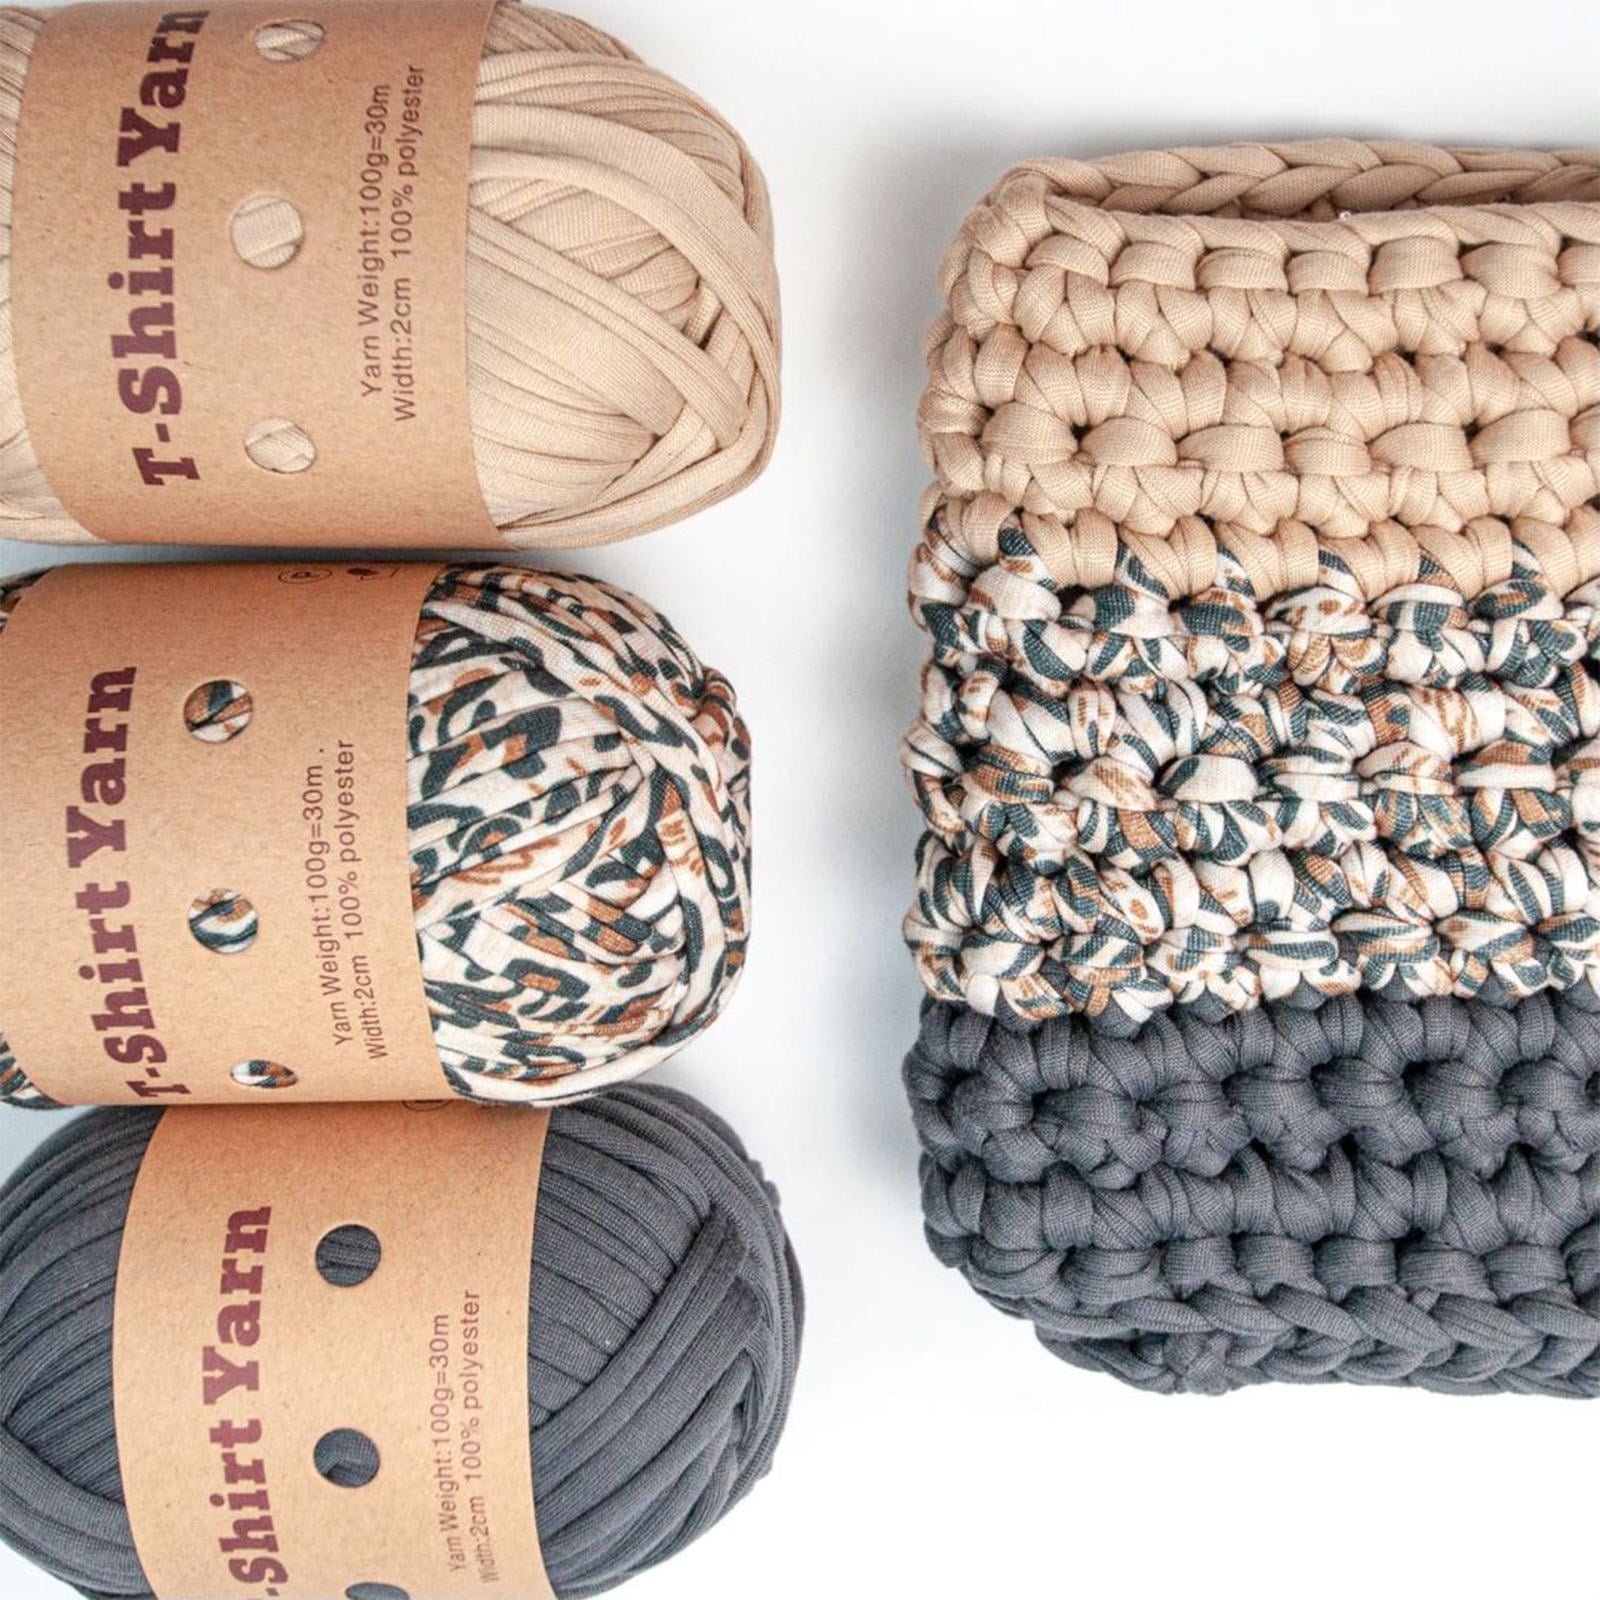 T-Shirt Yarn Spaghetti Yarn for Crocheting Hand Knitting DIY Basket Bag Purse Soft Cotton 5-7 mm Golden Lime